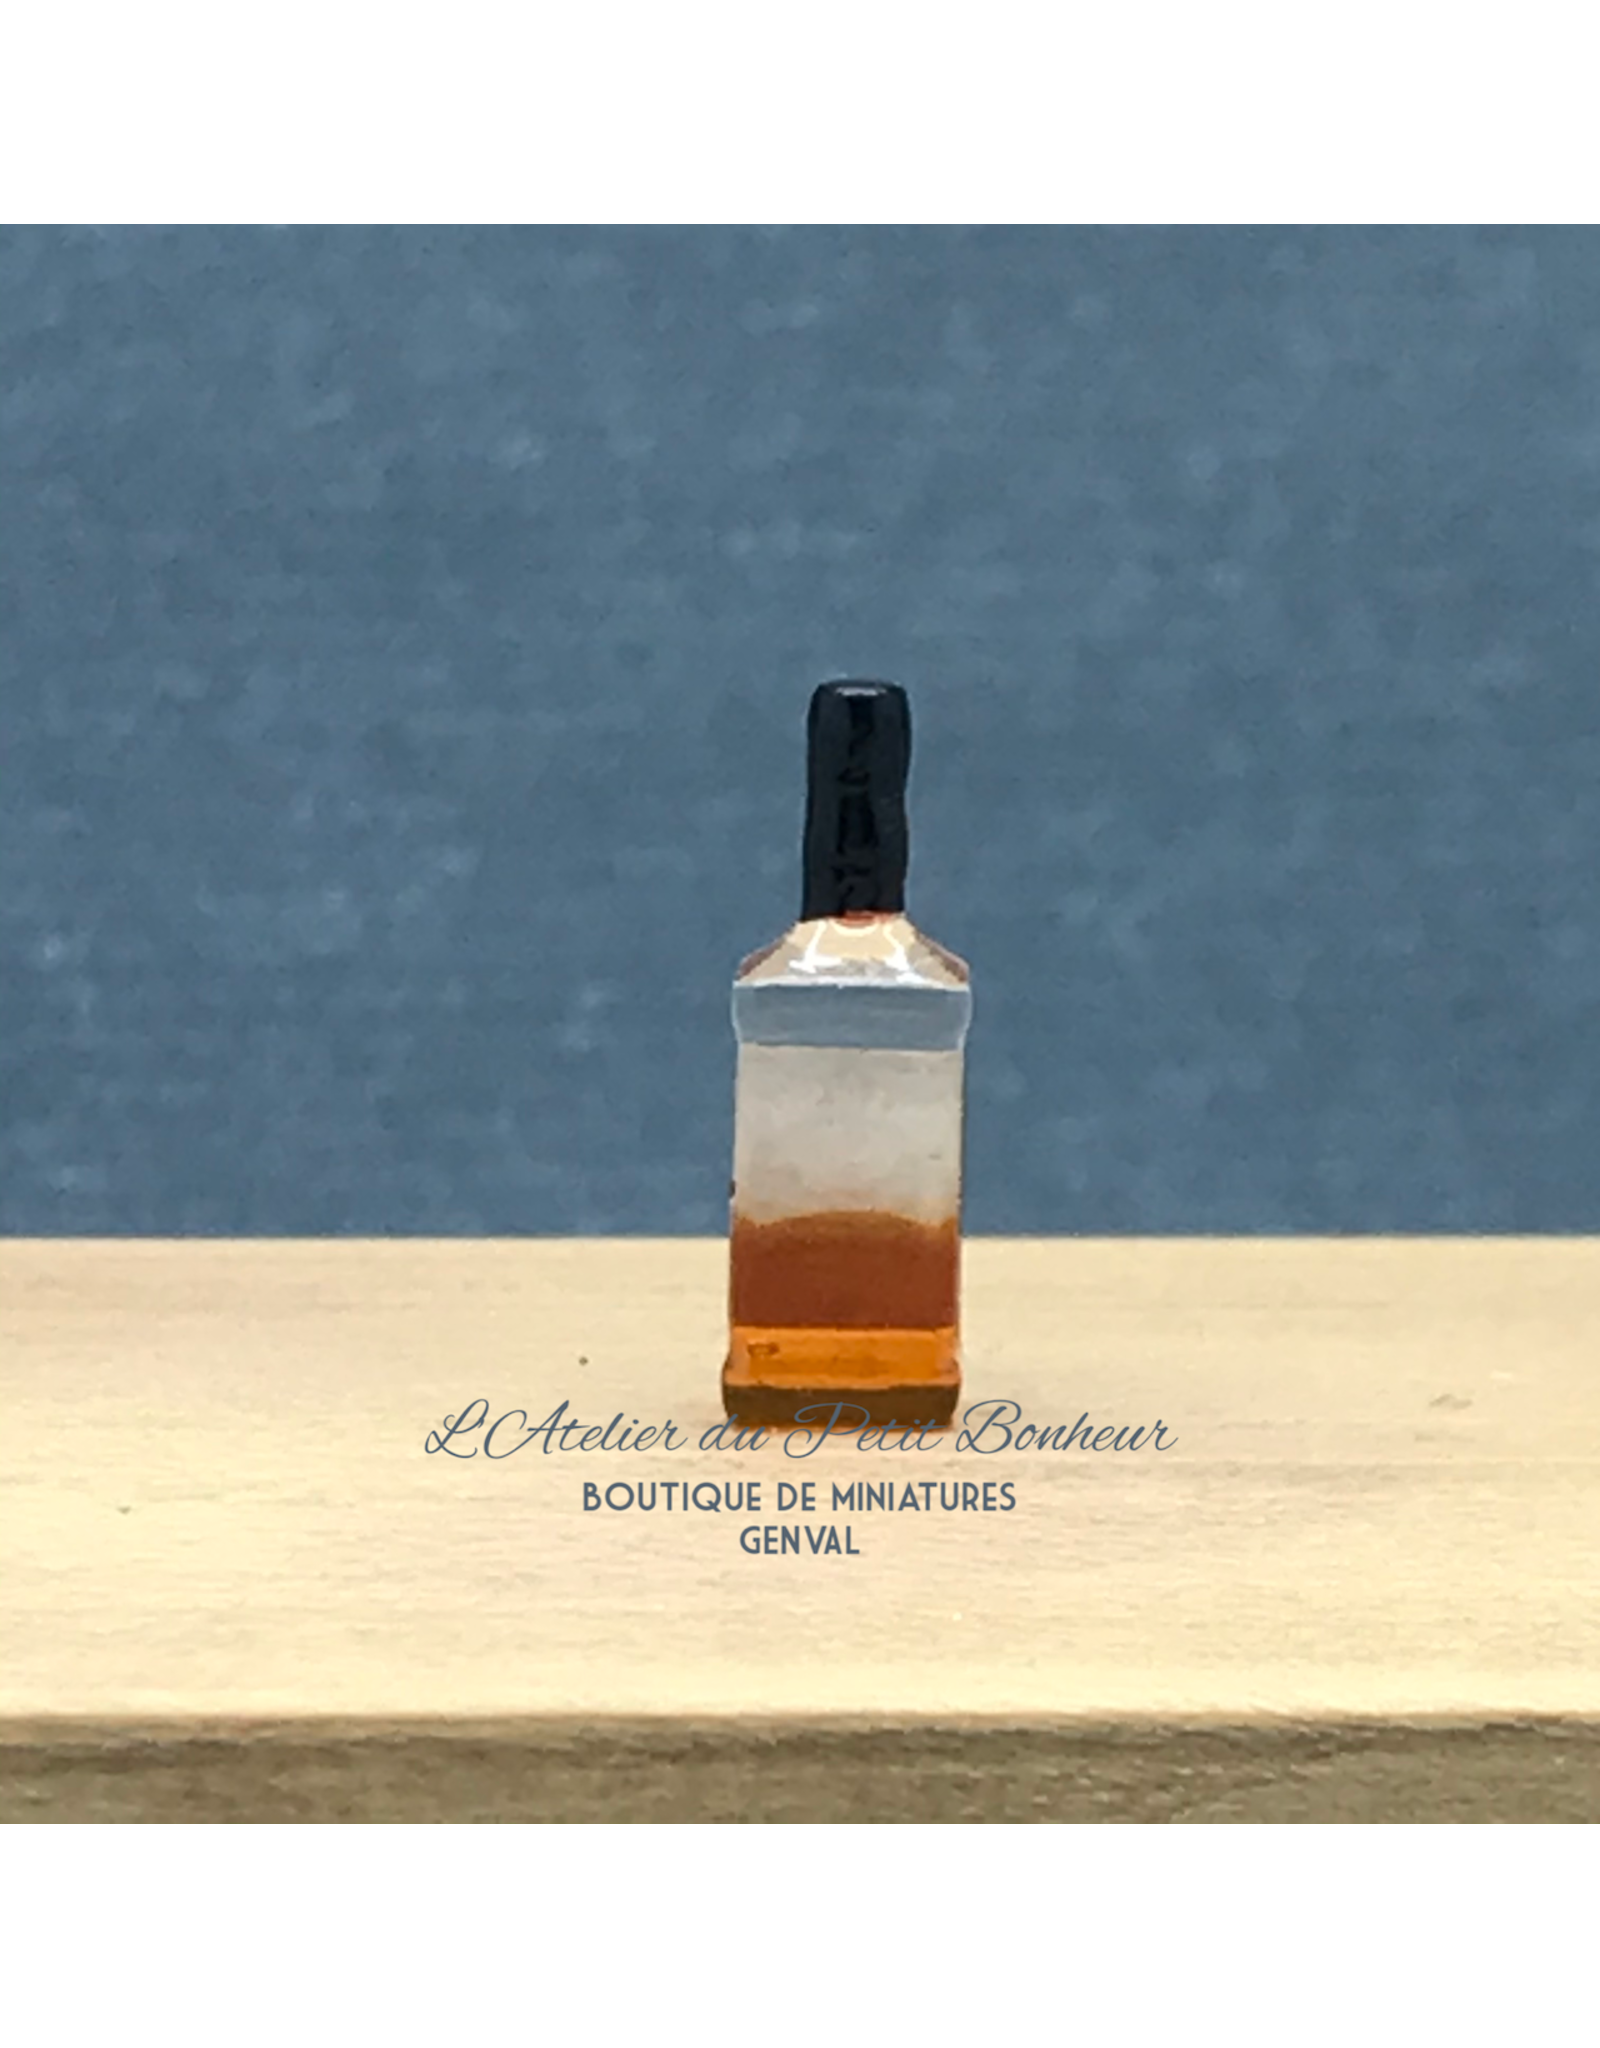 Bouteille de whisky miniature 1:12